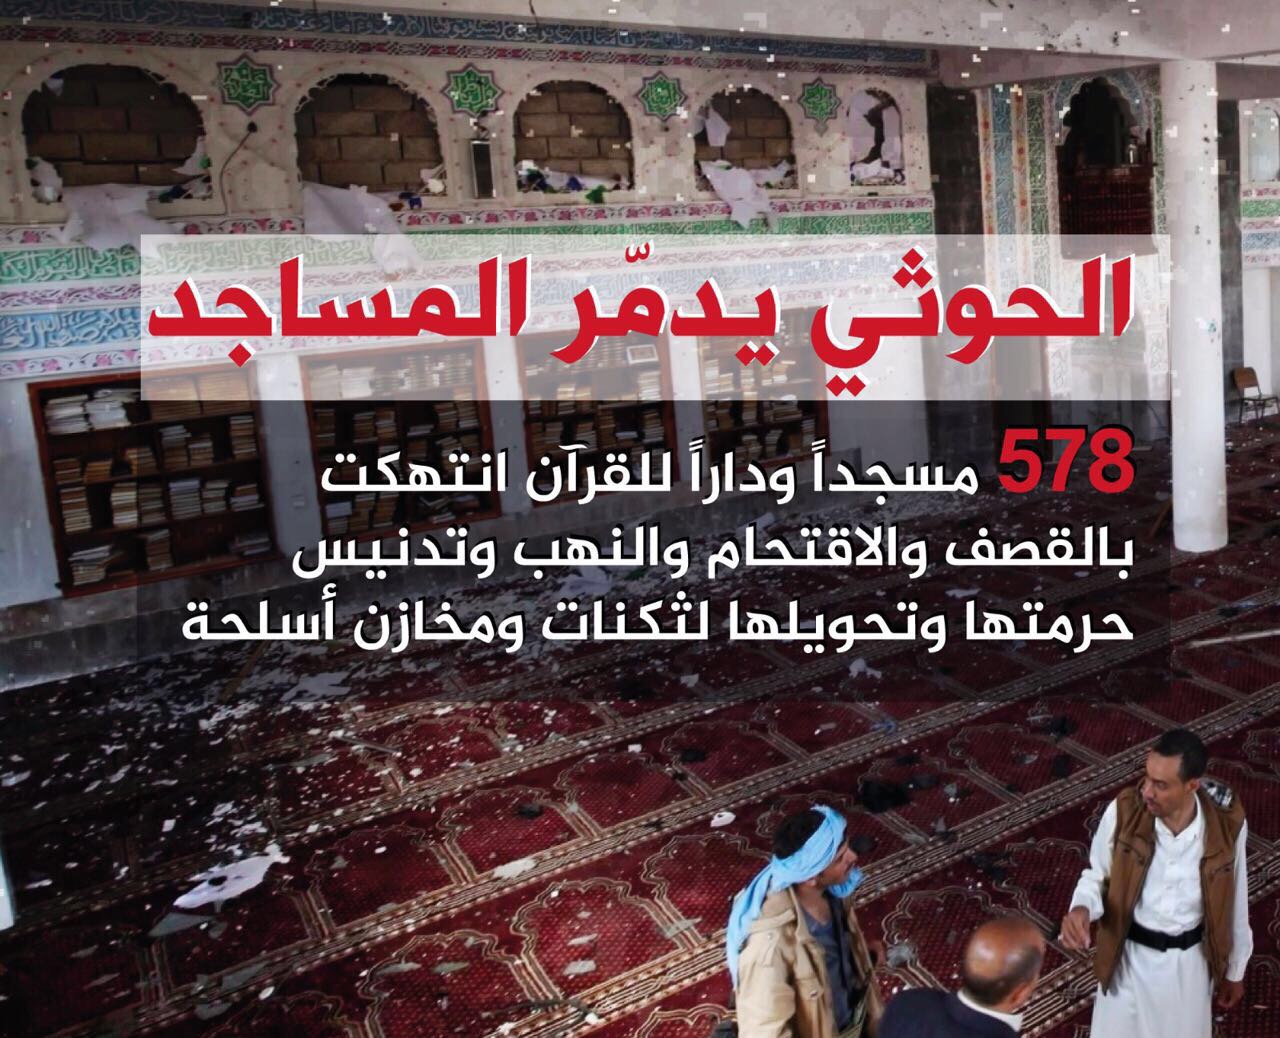 ميليشيا الحوثي تنتهك حرمة 578 مسجدًا ودارًا لتحفيظ القرآن